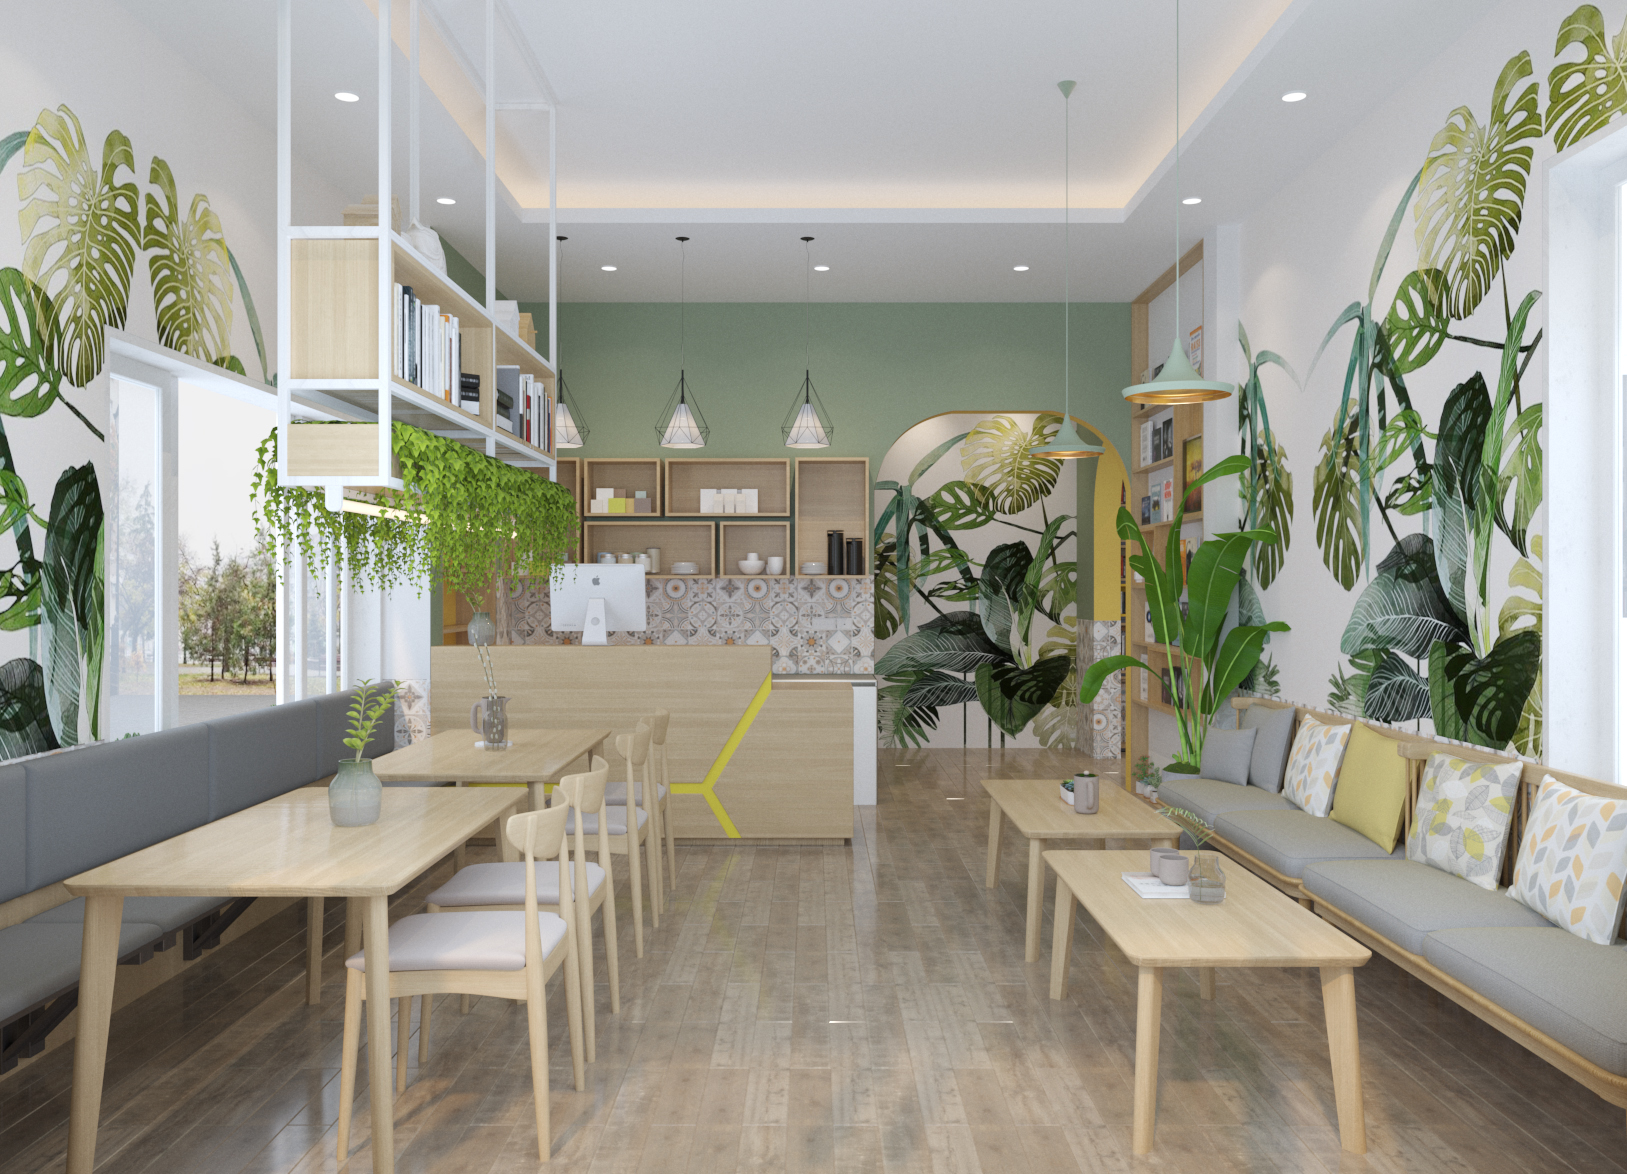 Thiết kế nội thất Cafe tại Hà Nội coffee Phùng Khoang 1615186976 1